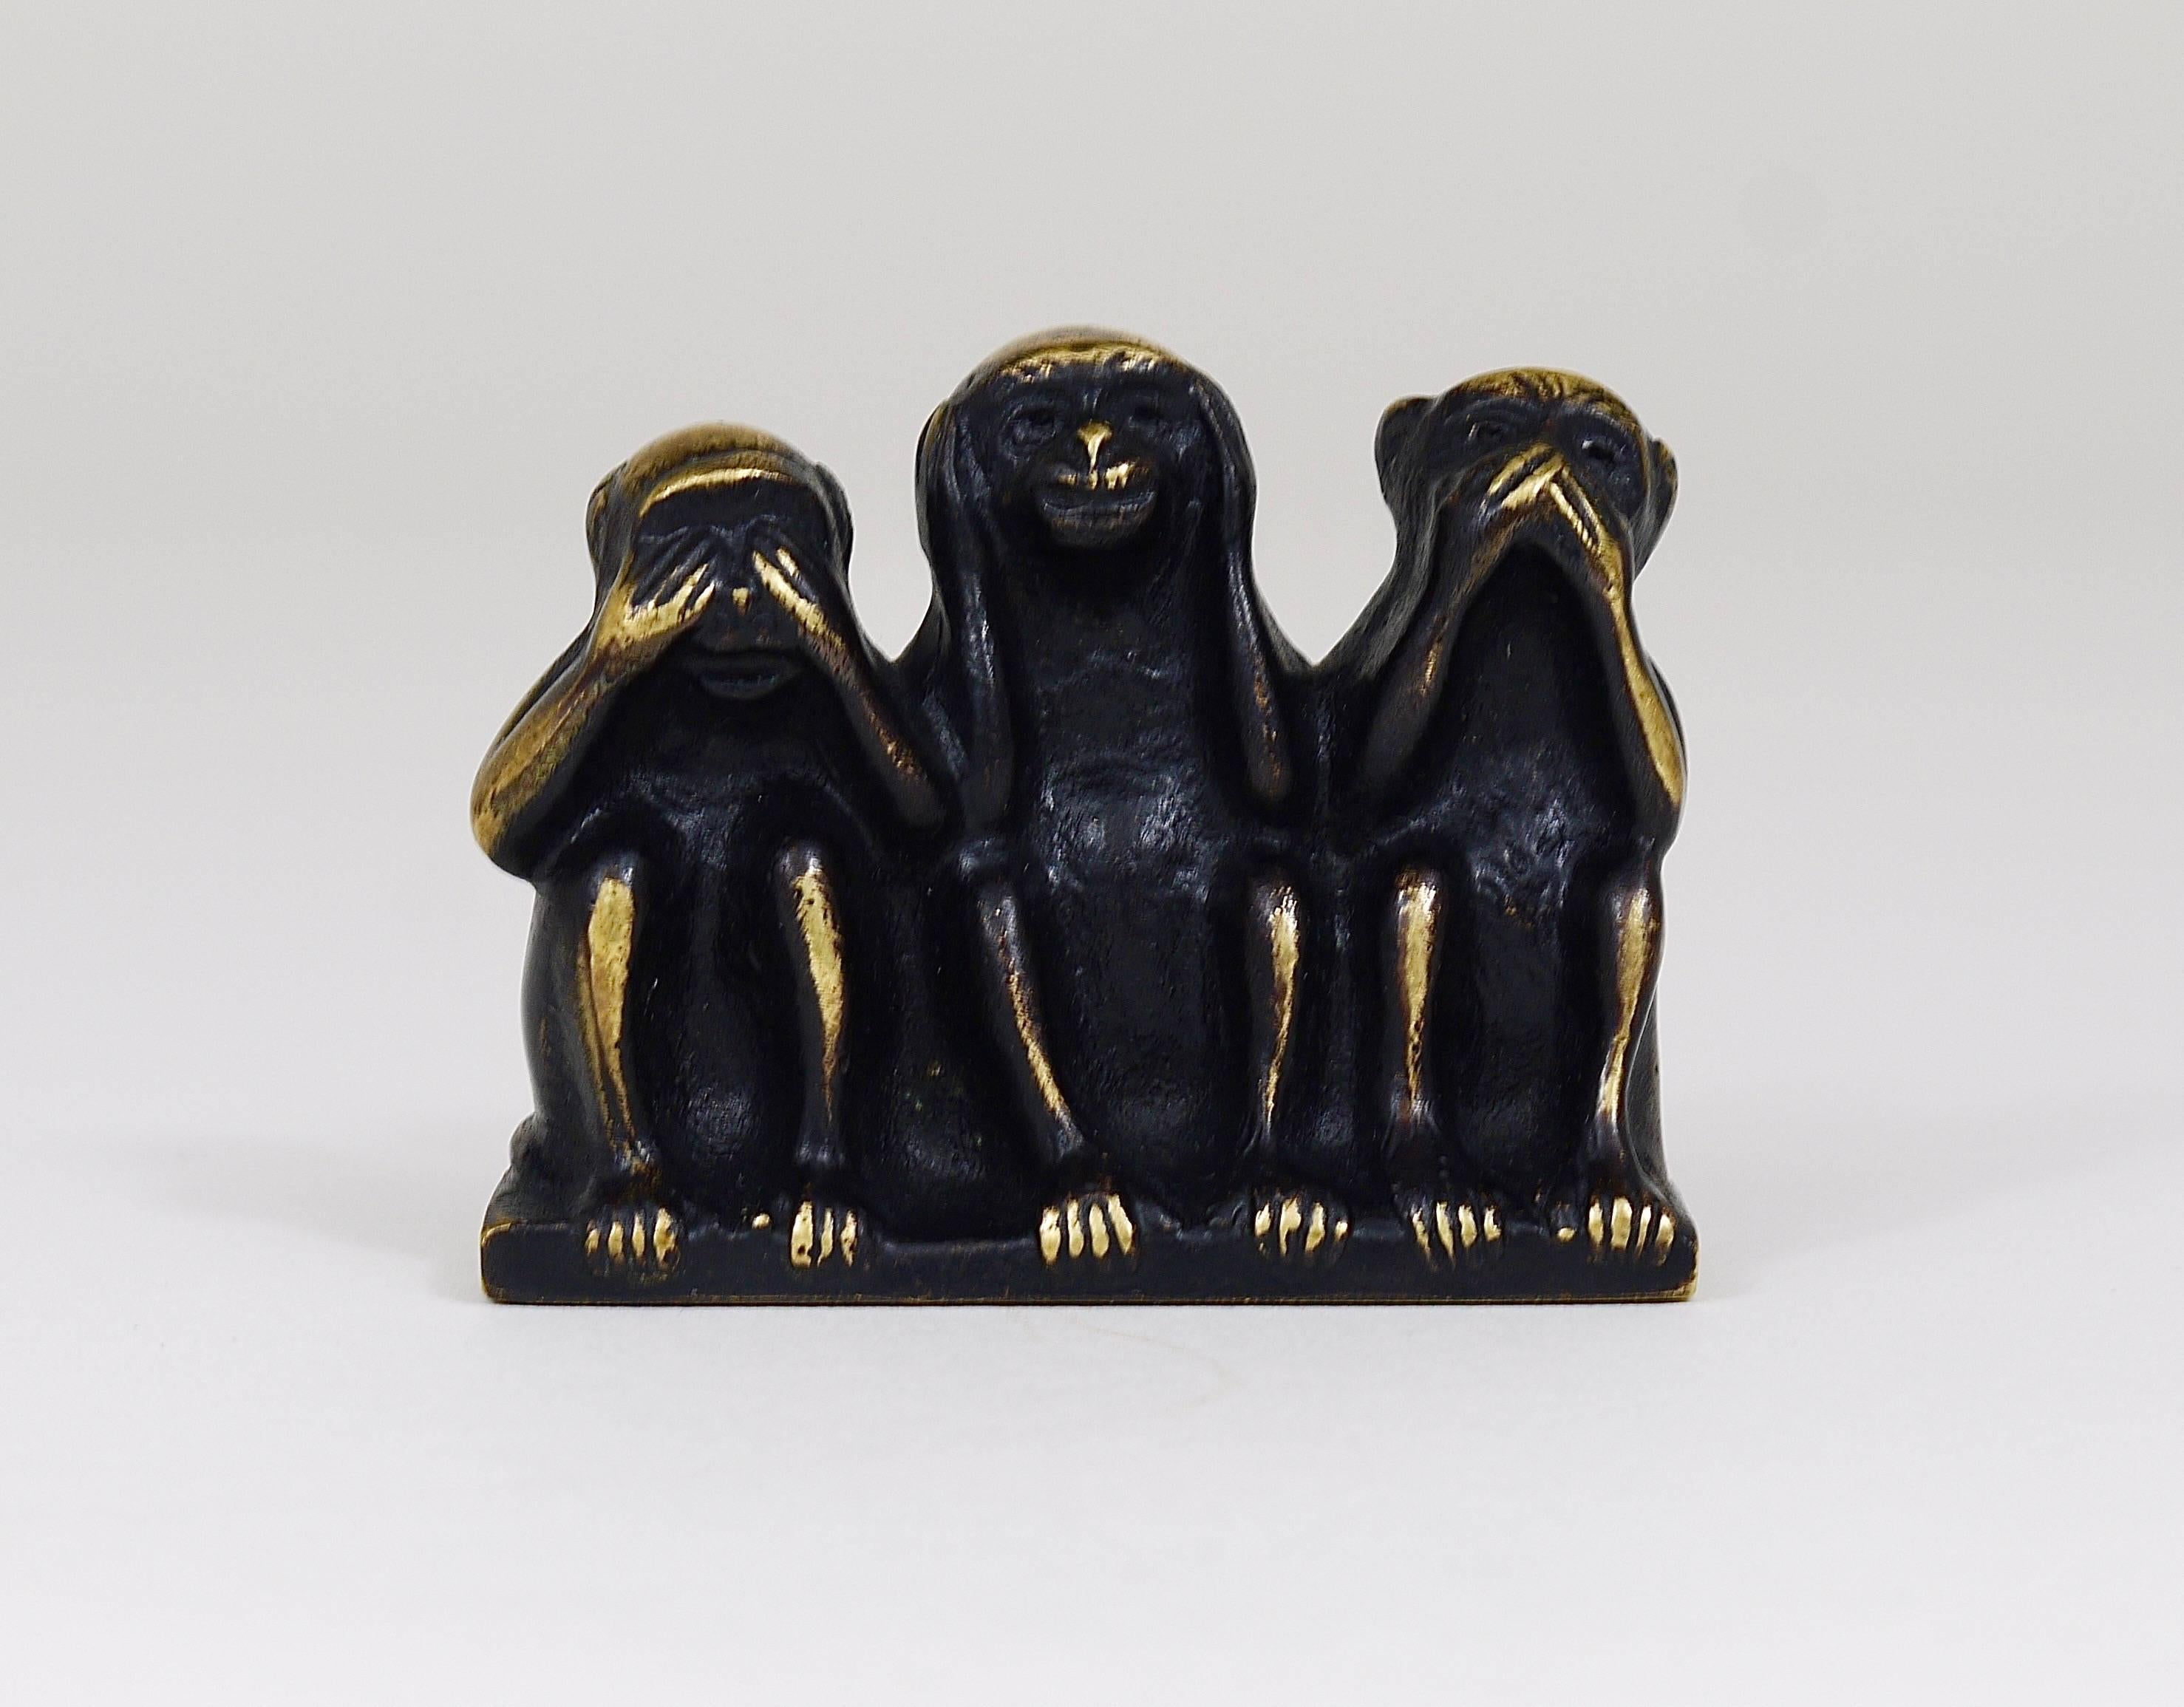 Eine schöne Skulptur aus Messing aus den 1950er Jahren, die drei Affen darstellt. Entworfen von Walter Bosse, ausgeführt von Hertha Baller in Österreich. In sehr gutem Zustand. Wir bieten weitere Walter Bosse Messingobjekte in unseren anderen